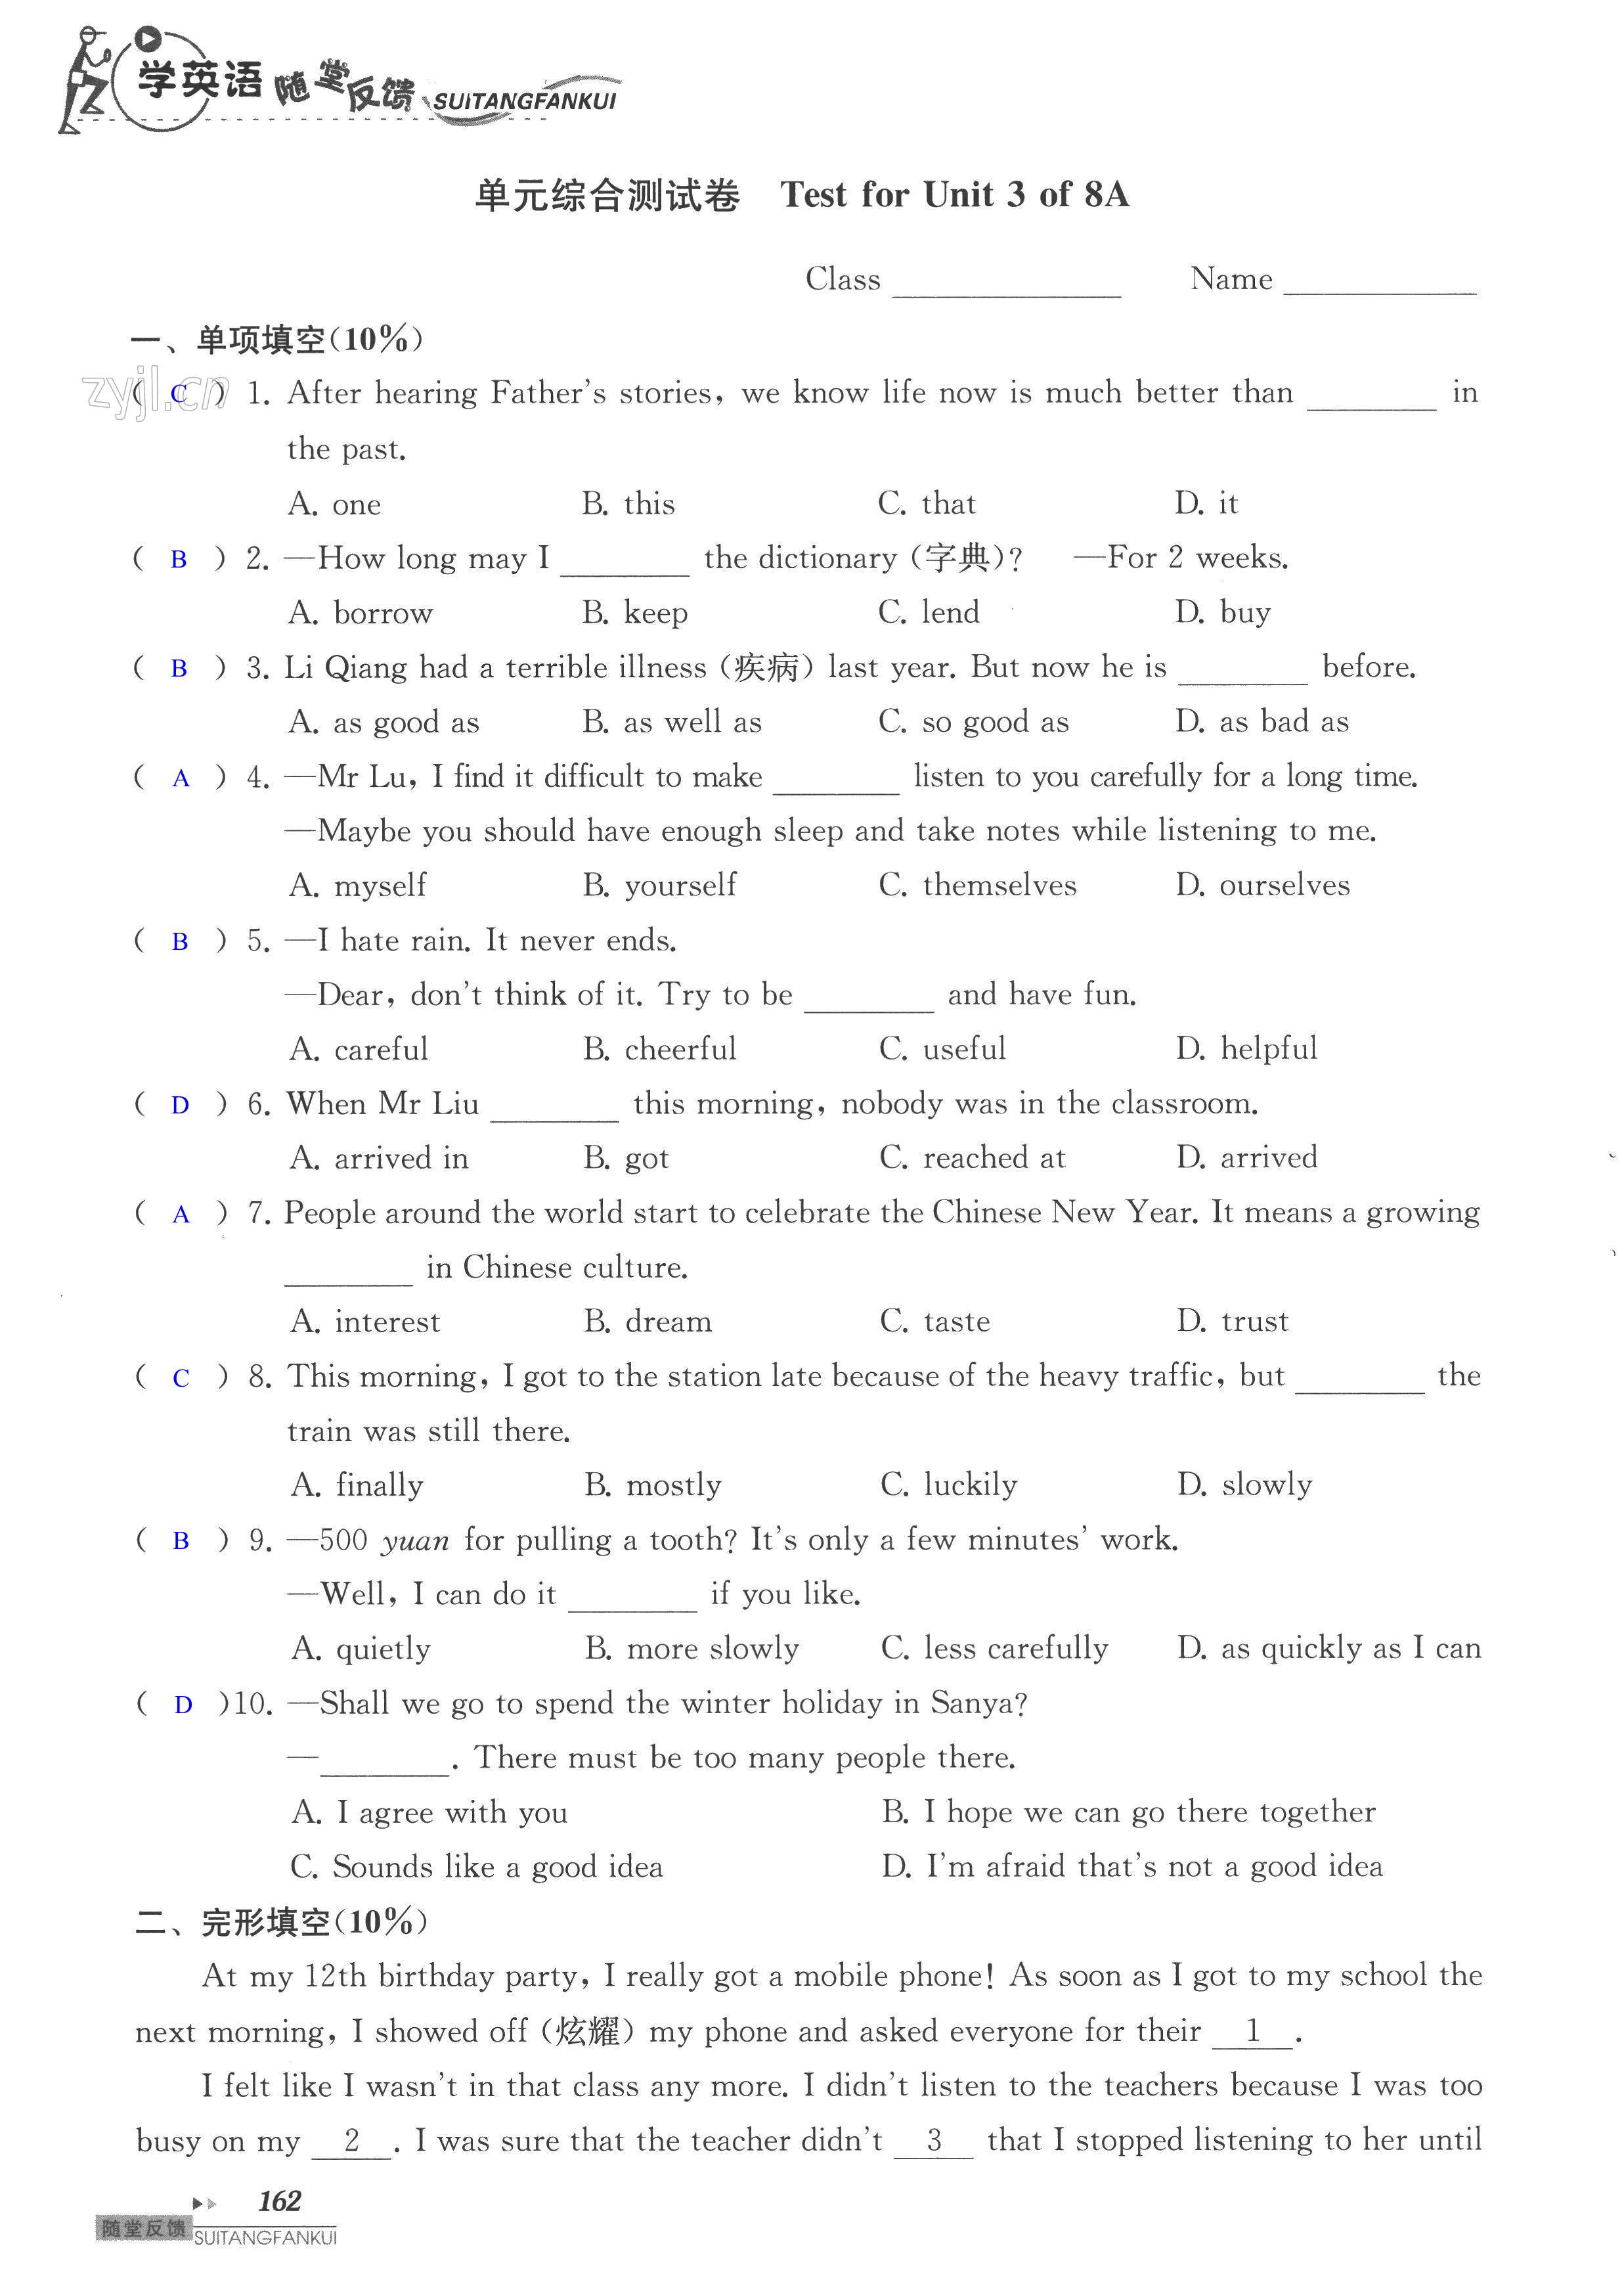 单元综合测试卷 Test for Unit 3 of 8A - 第162页